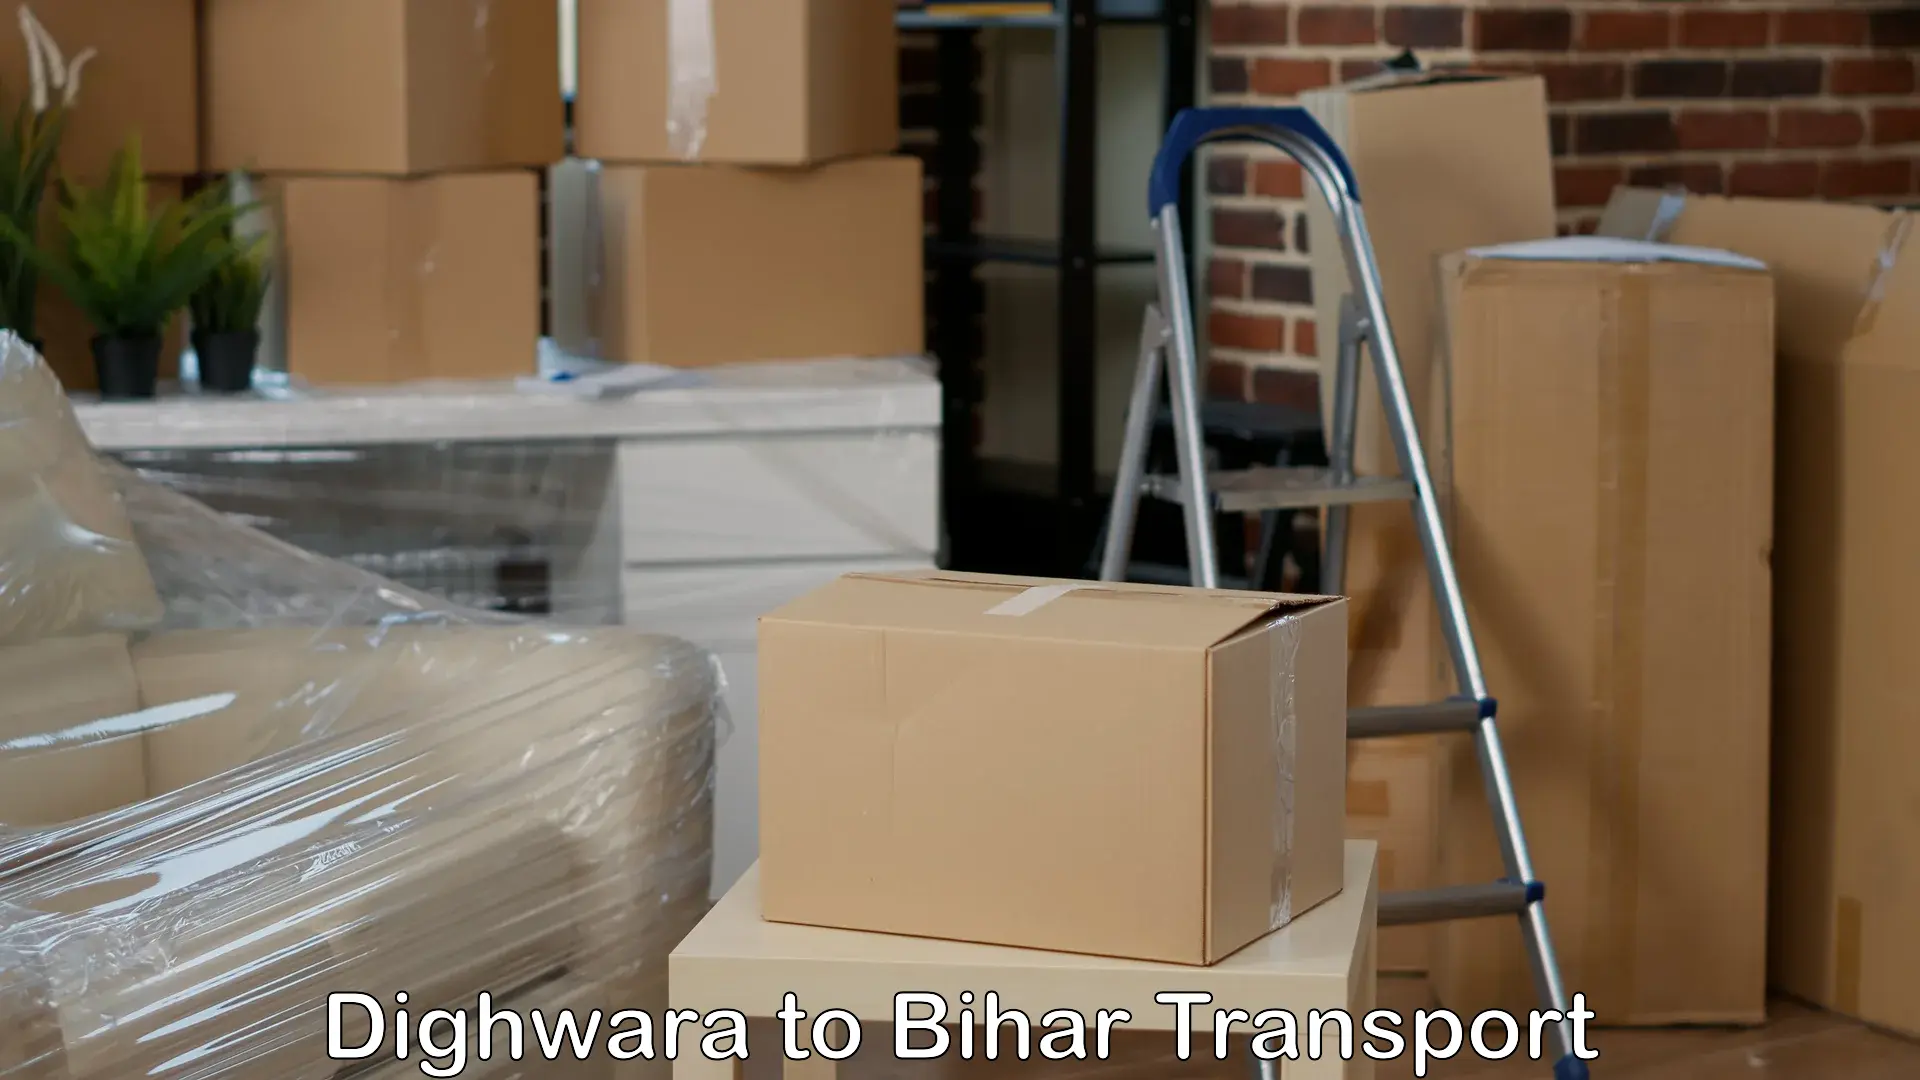 Transport in sharing Dighwara to Chakai